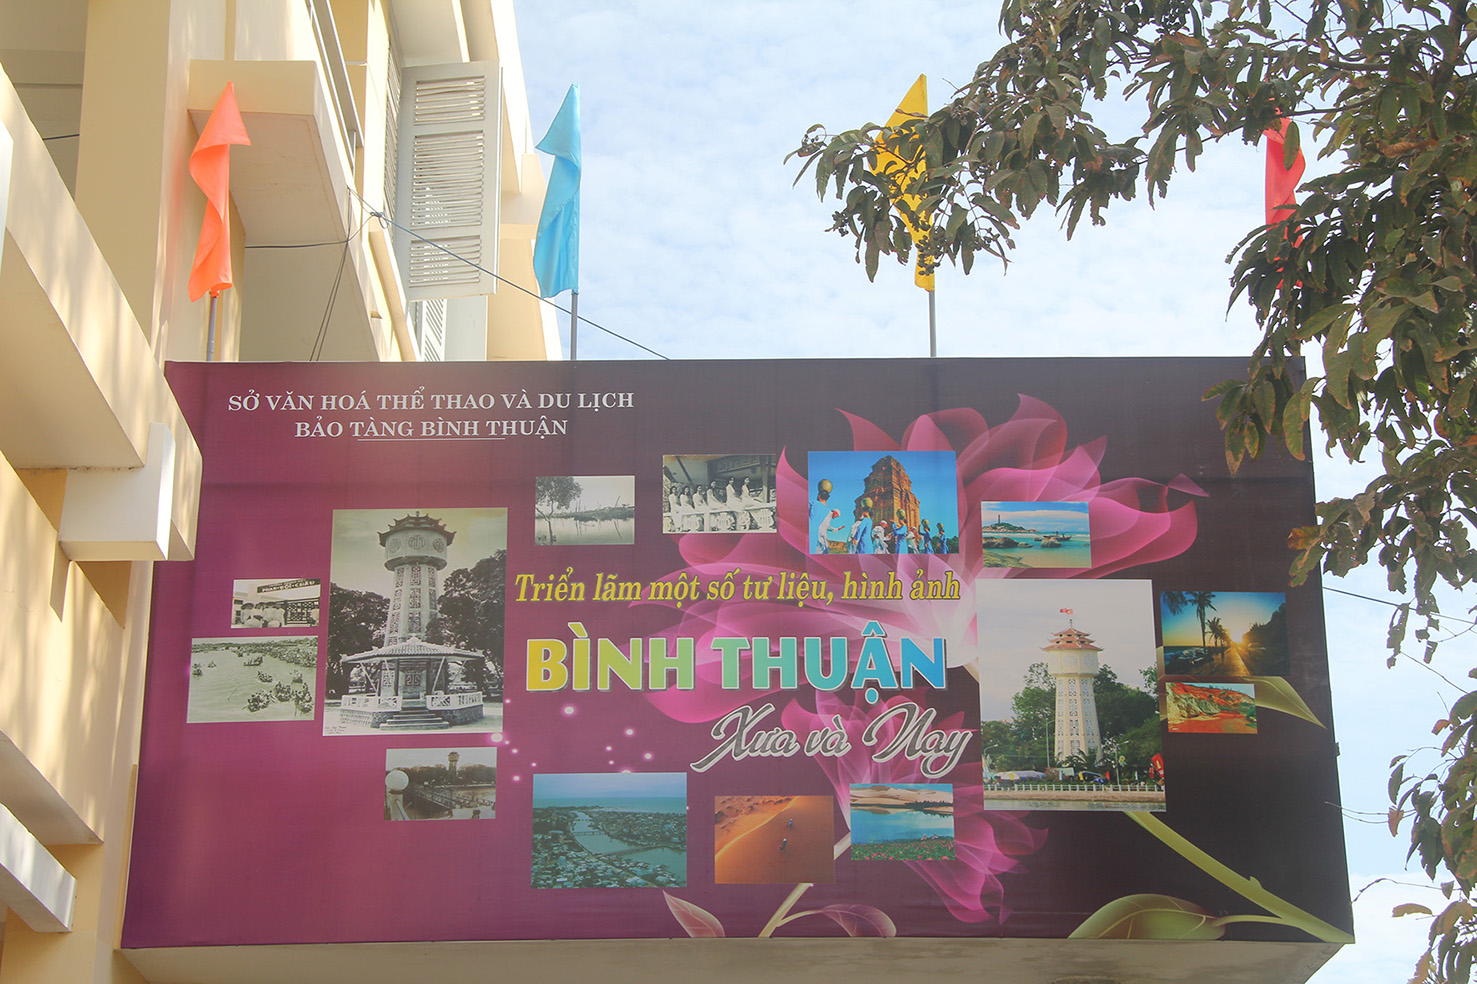 Bảo tàng Bình Thuận tổ chức Triển lãm một số tư liệu, hình ảnh Bình Thuận xưa và nay